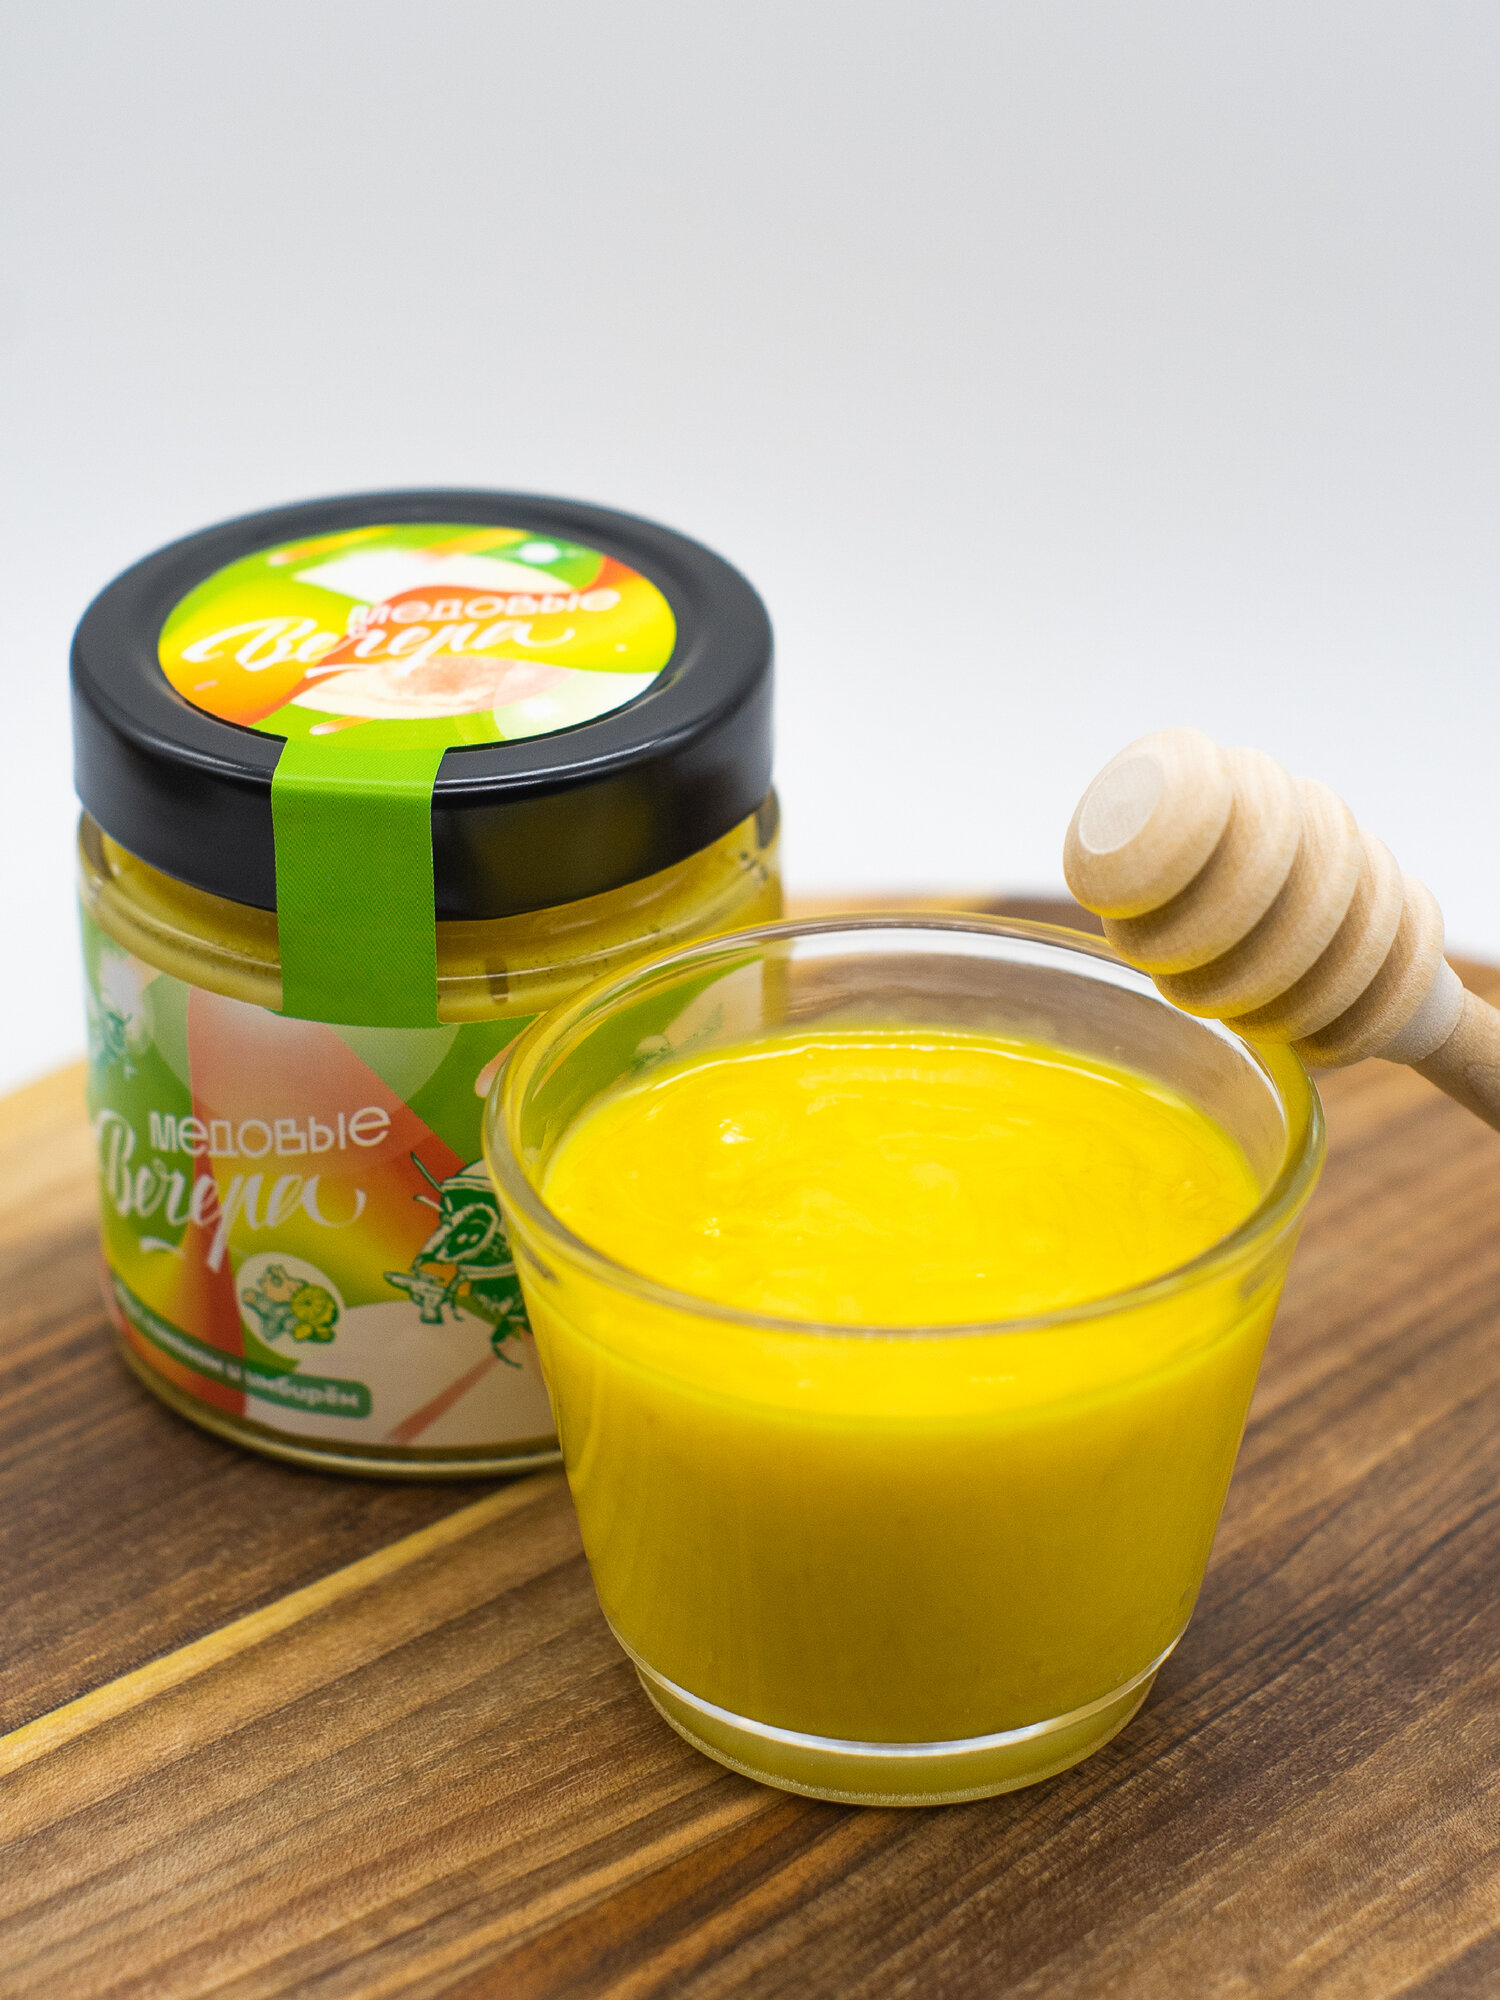 Мёд натуральный с лимоном и имбирём 250г ТМ "Медовые Вечера" (стекло)